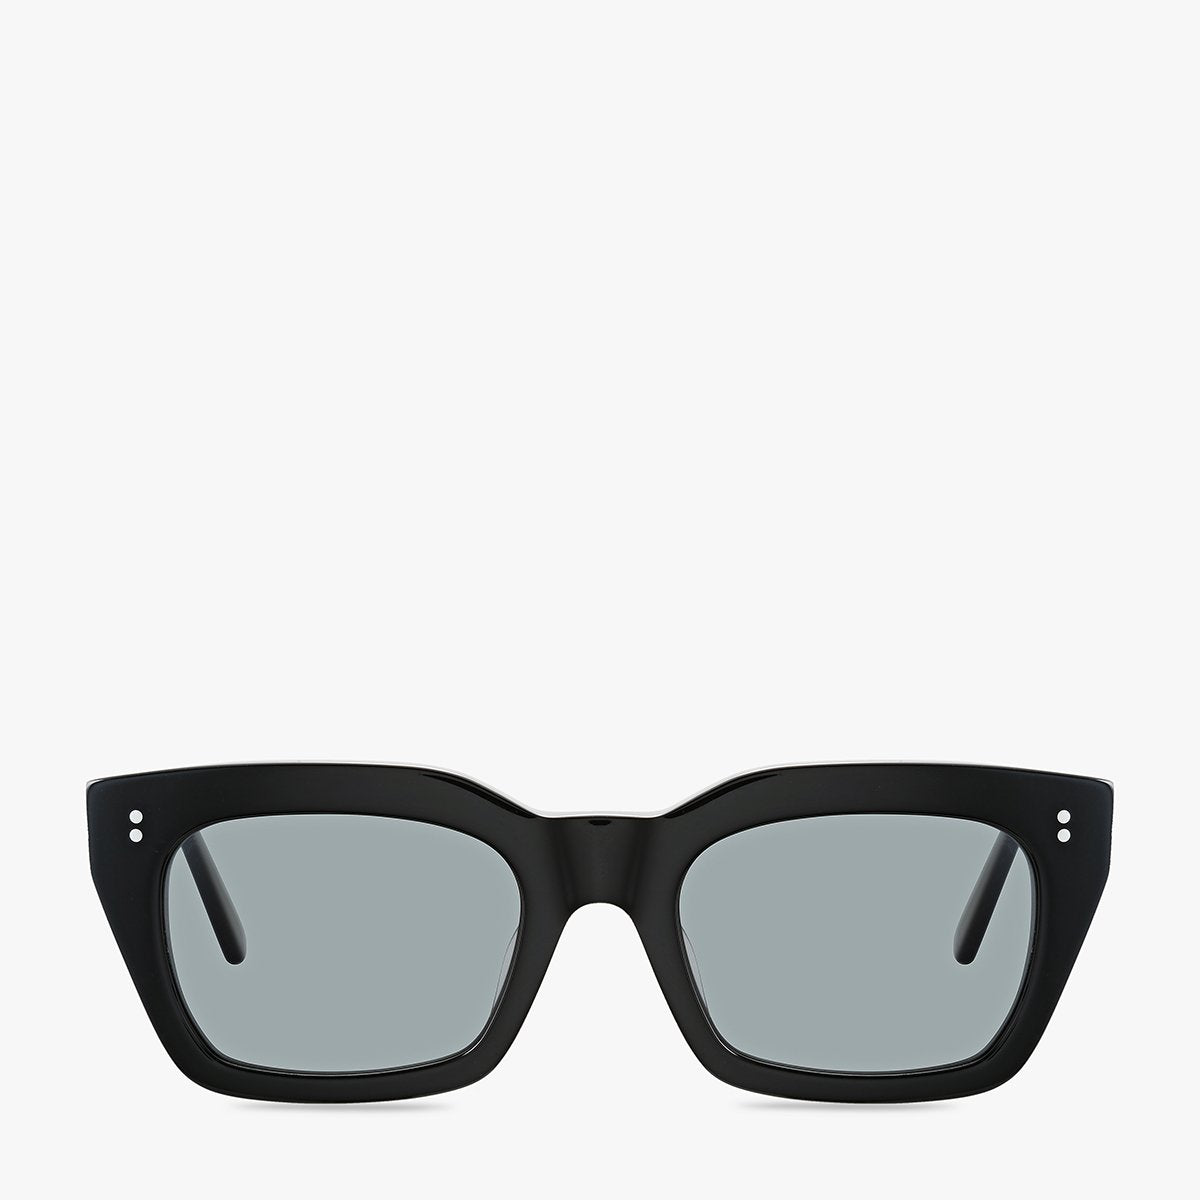 Antagonist Sunglasses in Black